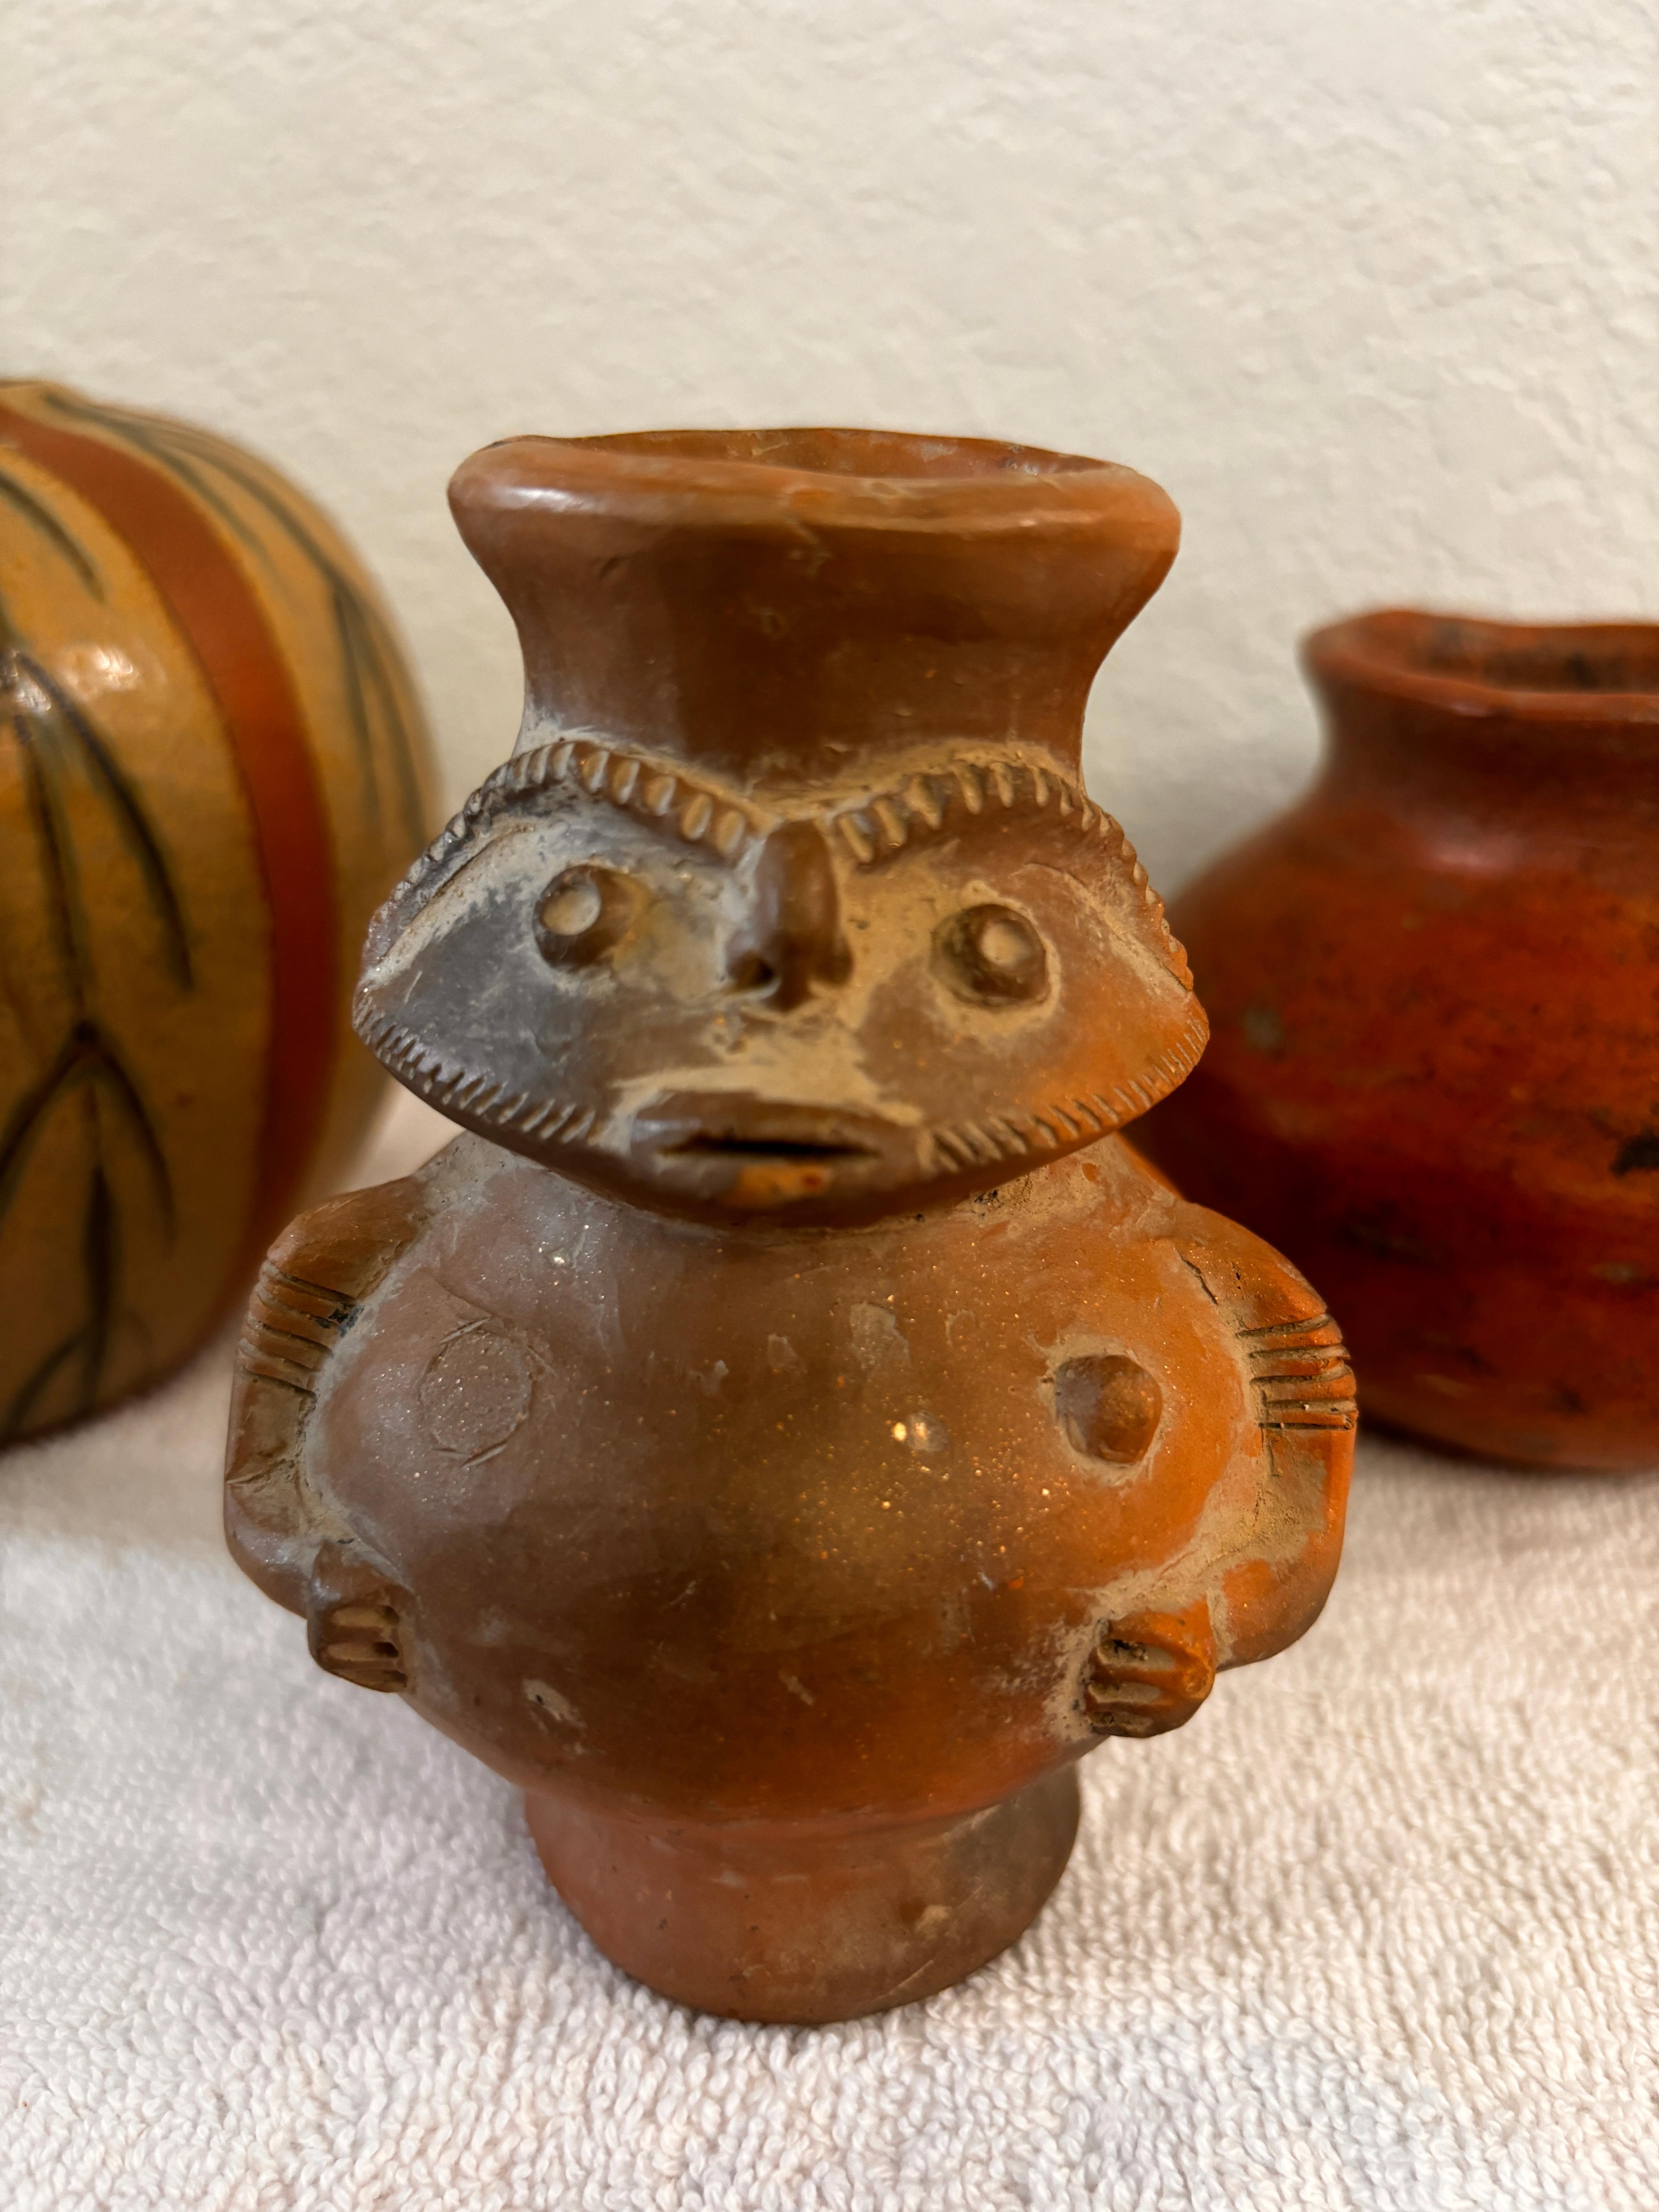 Set of Pre-Columbian Style Pottery - 2 Bowls & 1 Pourer - Un-Signed